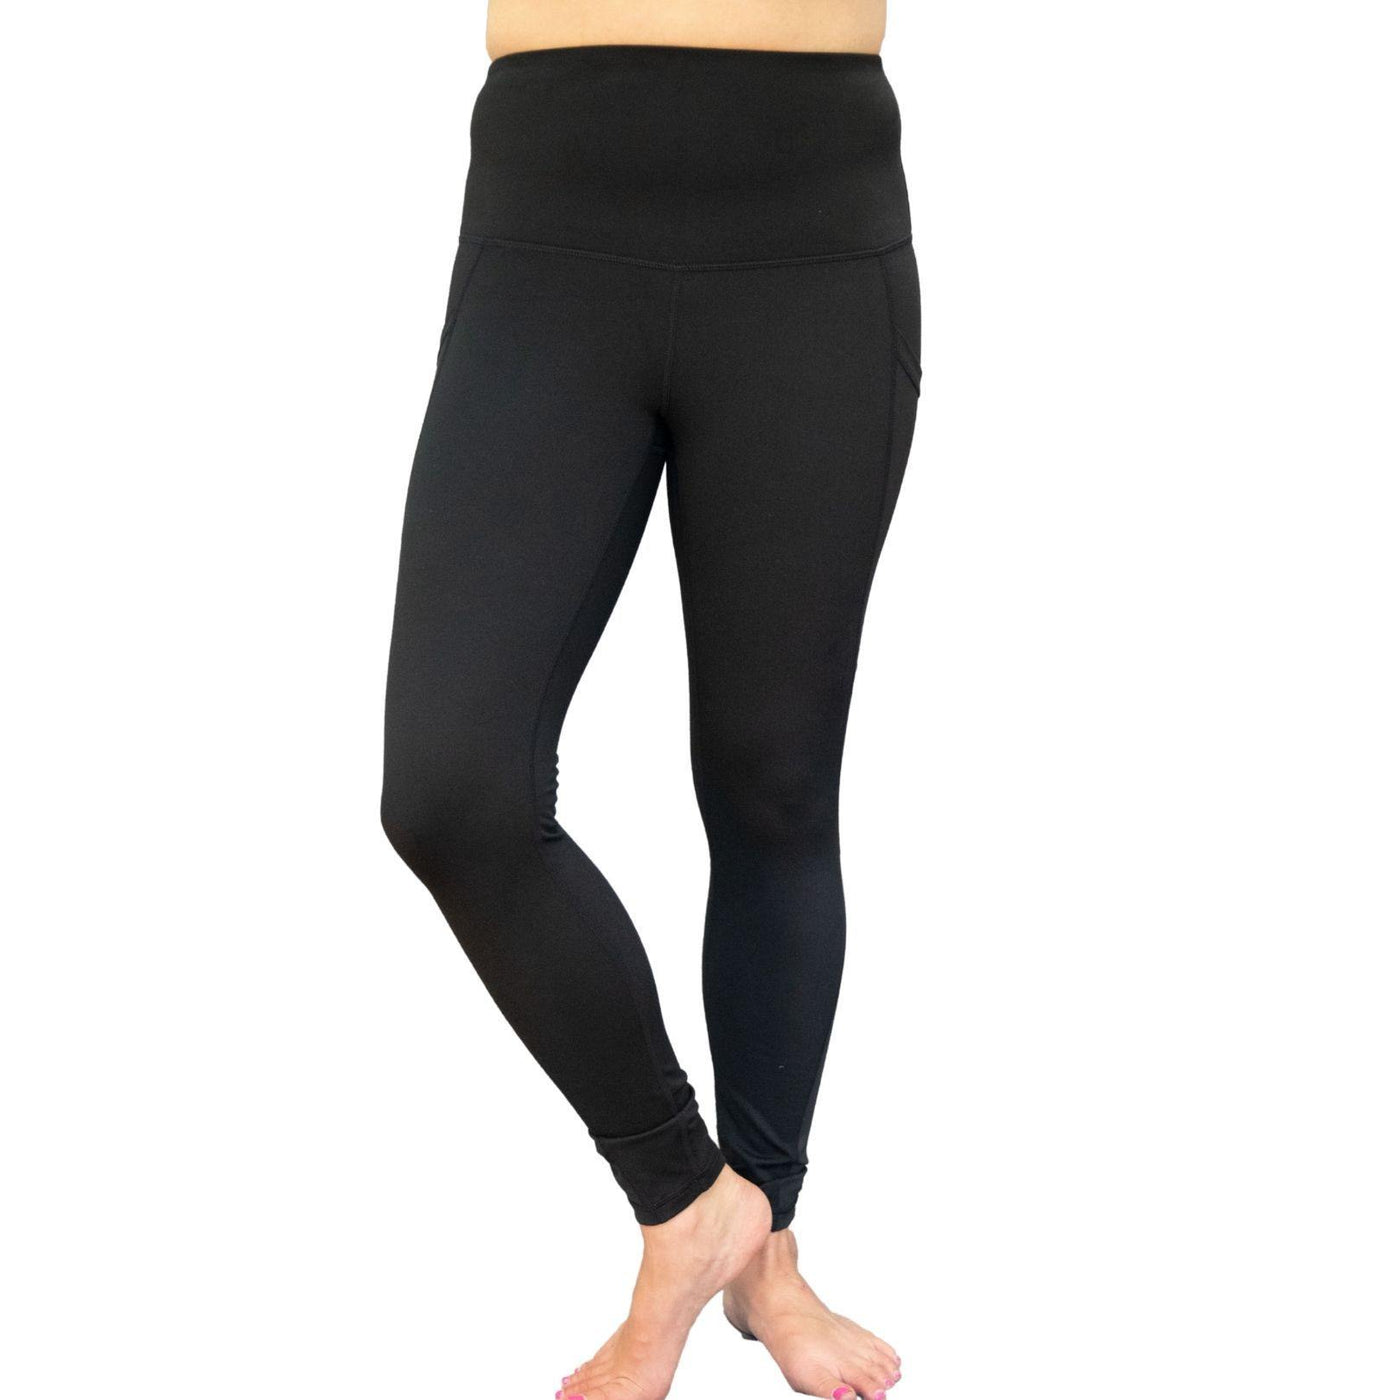 https://daliajade.com/cdn/shop/products/mono-b-black-yoga-leggings-1_1400x.jpg?v=1629086254